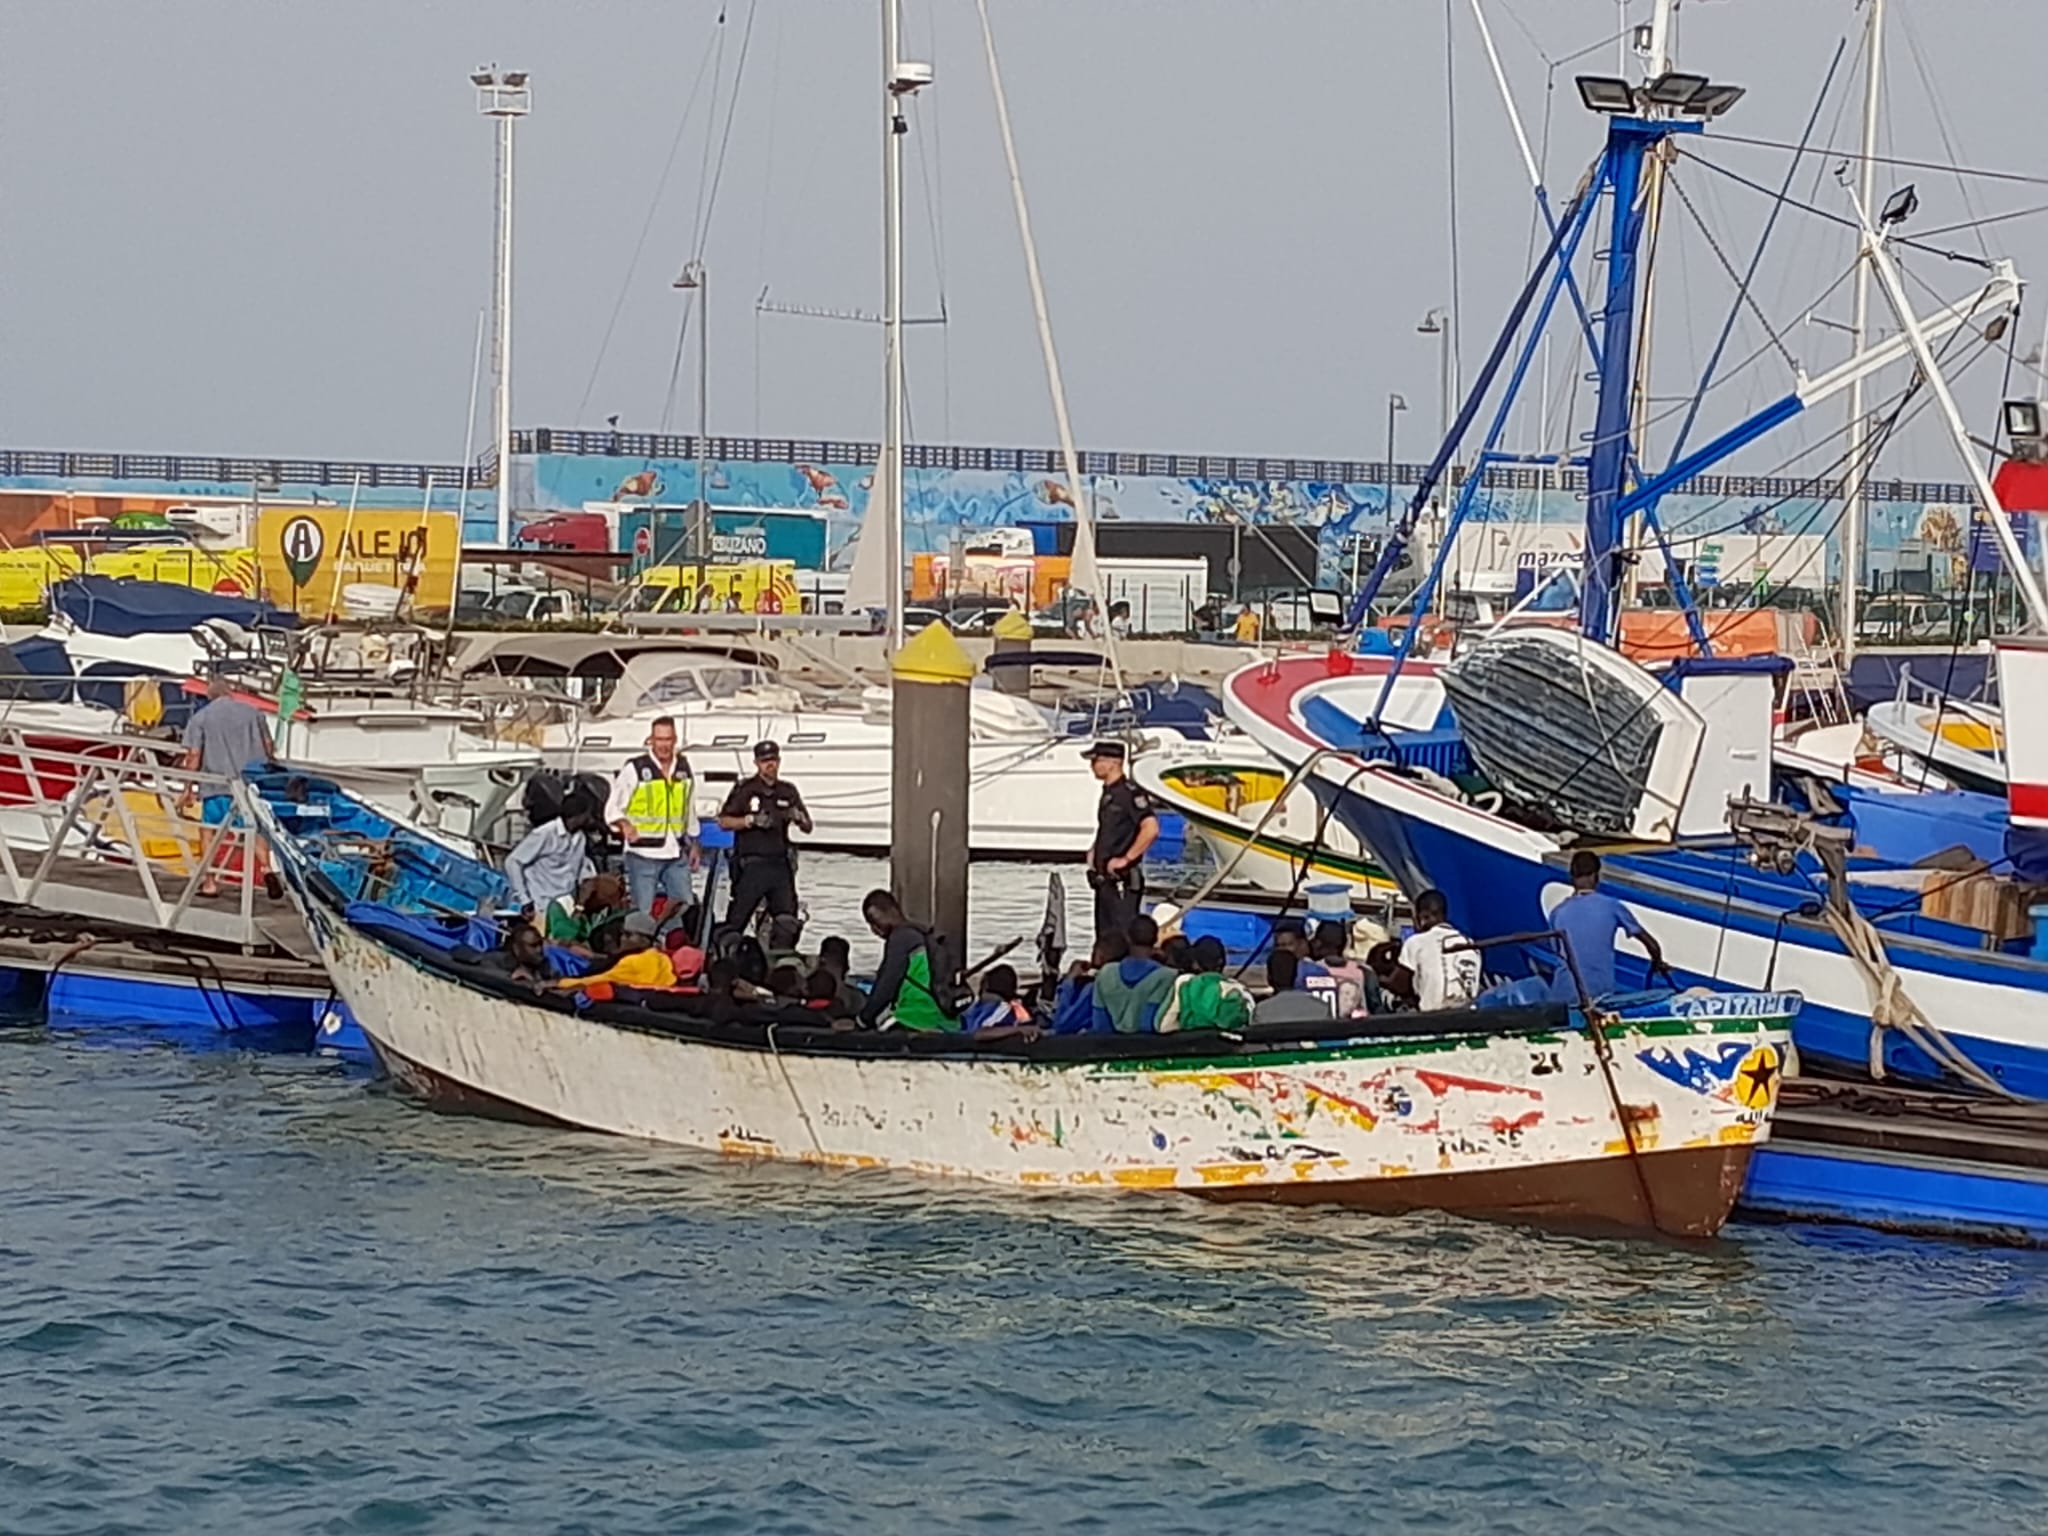 Plus de 200 migrants sont arrivés sur les côtes espagnoles en provenance du Sénégal